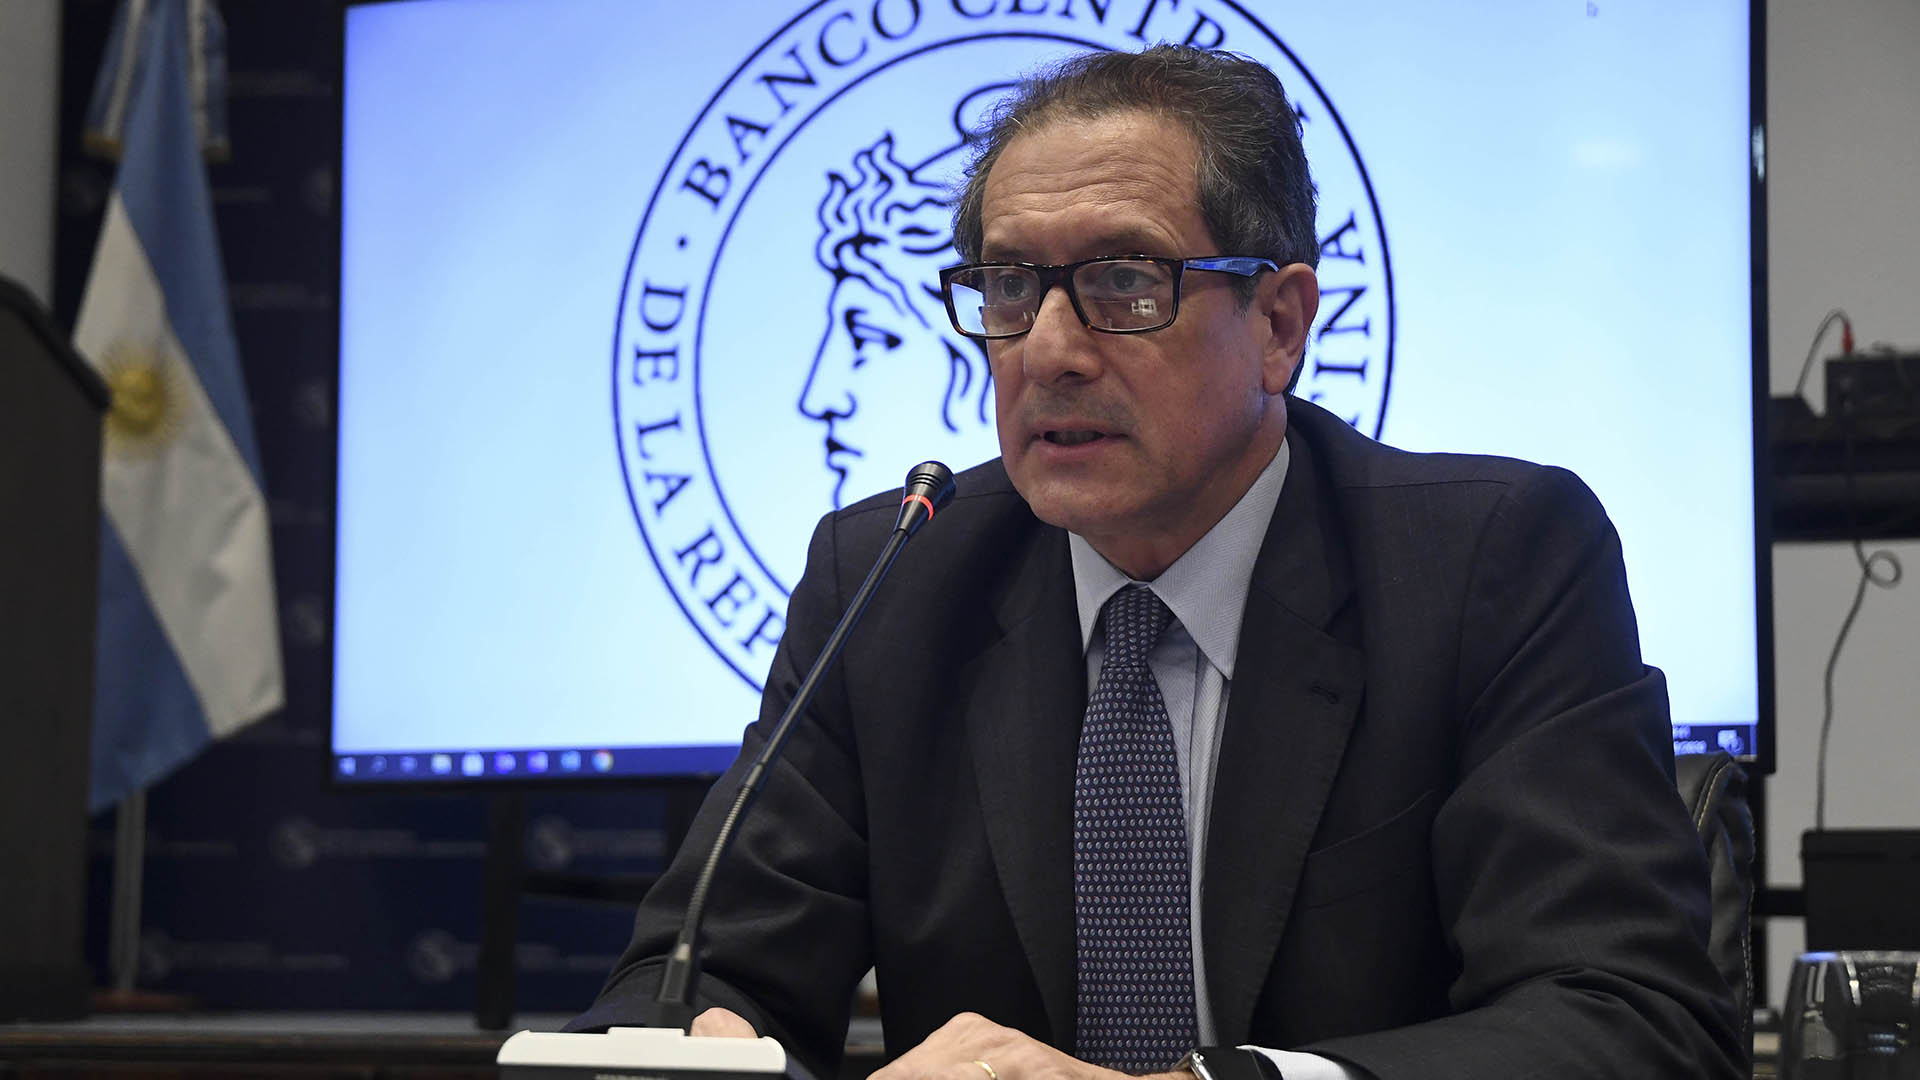 El presidente del Banco Central, Miguel Pesce, no podrá sentarse a esperar que ese movimiento de entrada y salida en cada desembolso para cumplir con su parte del trato